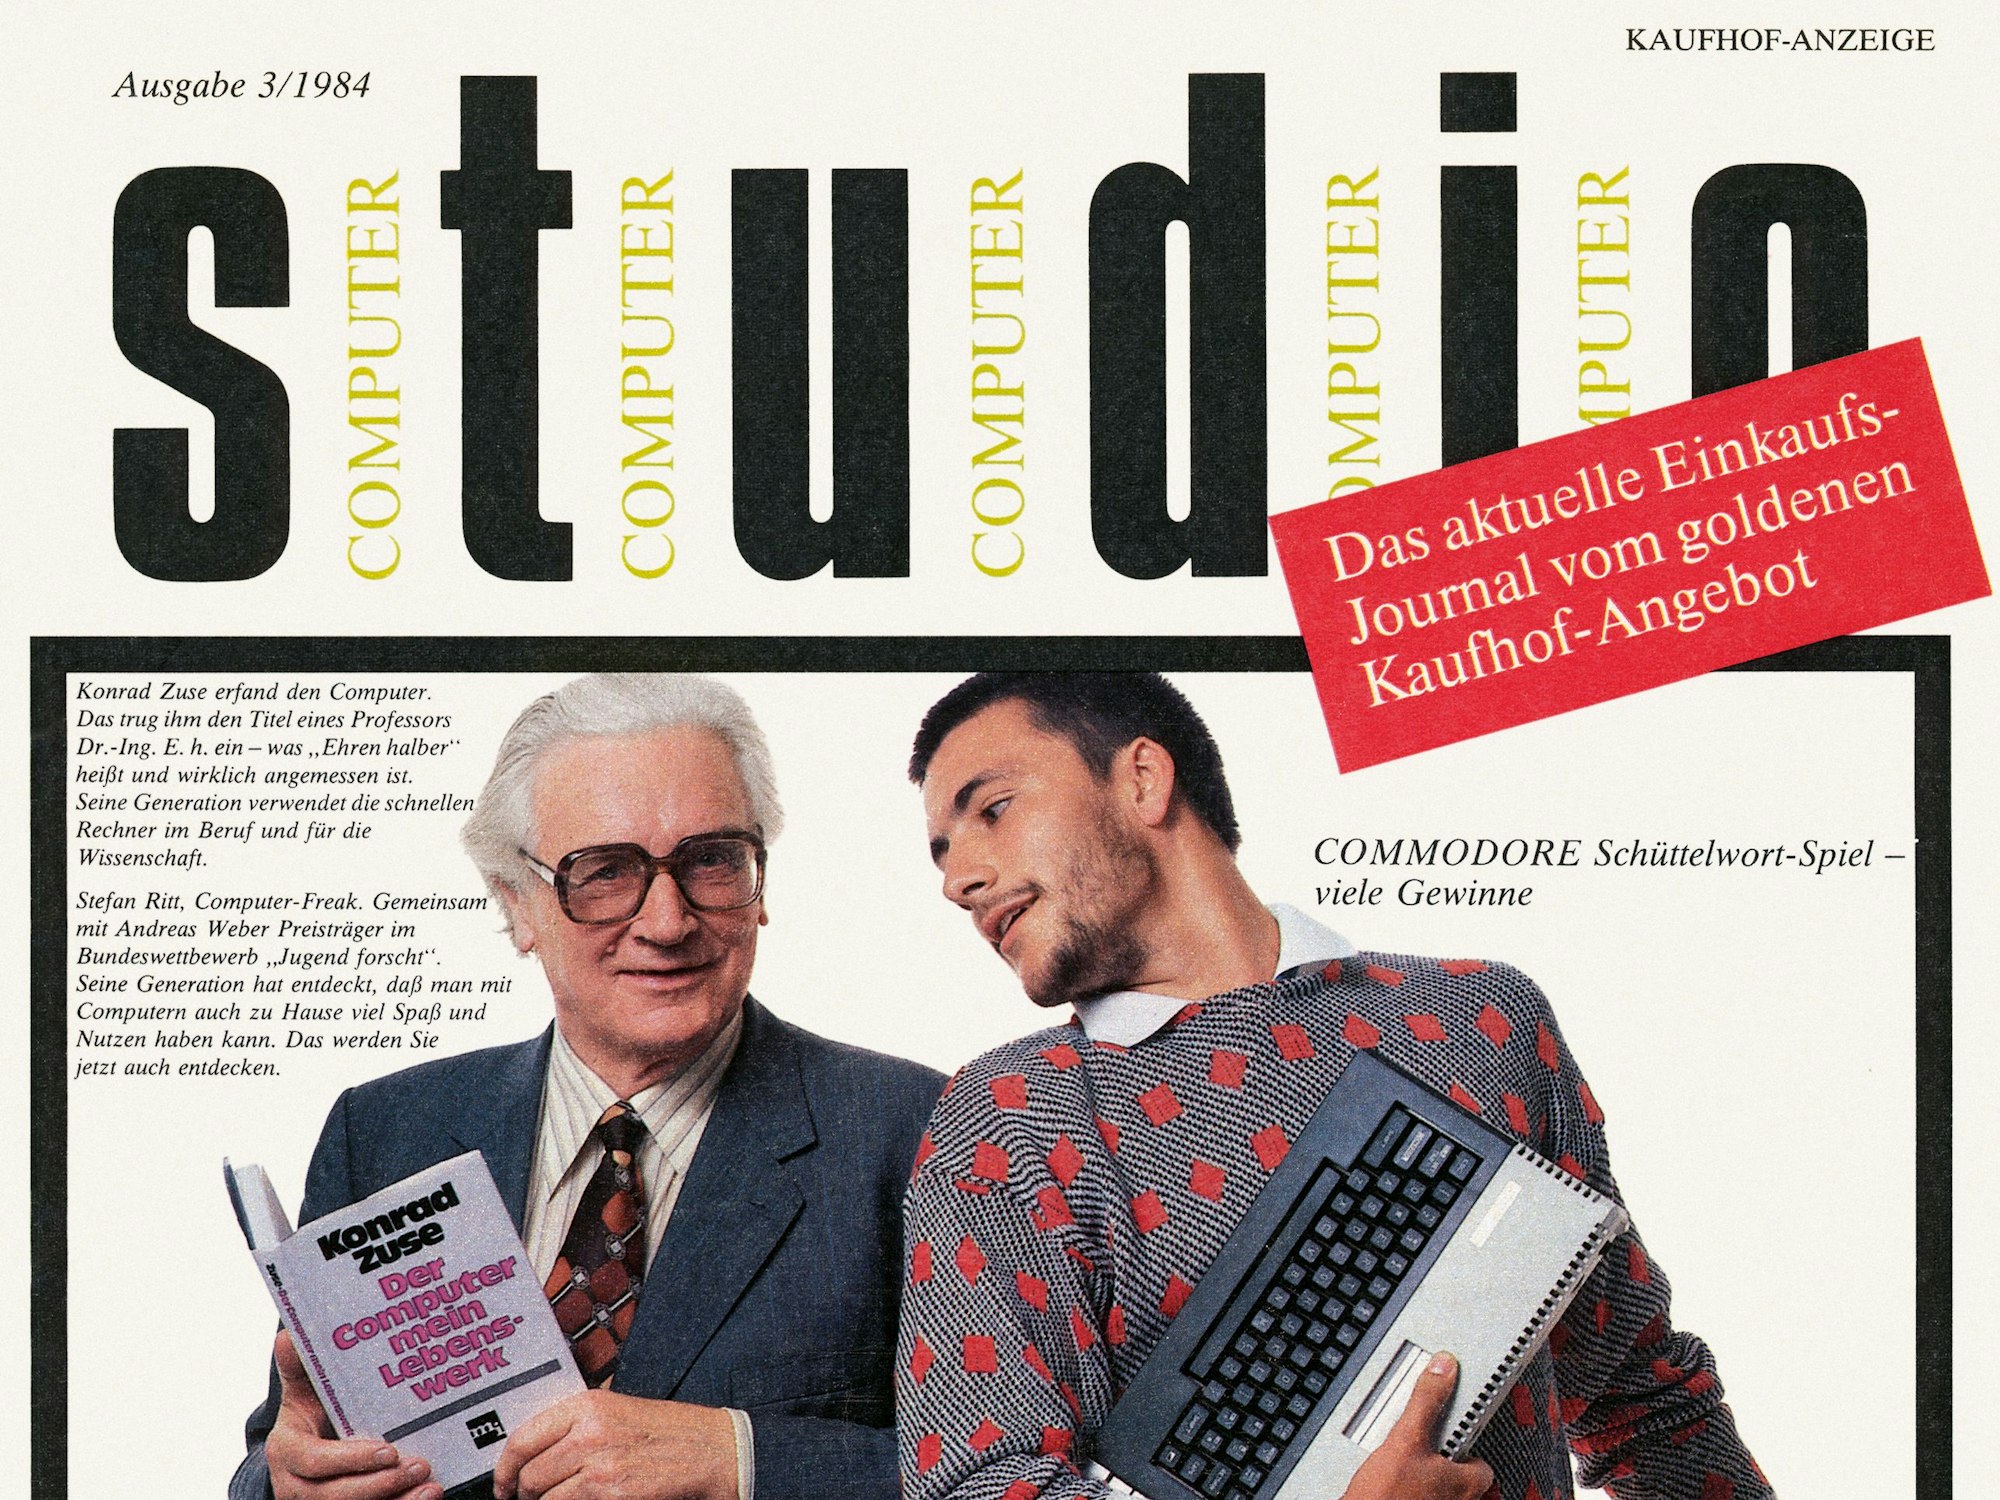 Konrad Zuse 1984 in einer Broschüre des Kaufhof.

Bild zur Verfügung gestellt vom Taschen Verlag zum Buch "The Computer"

